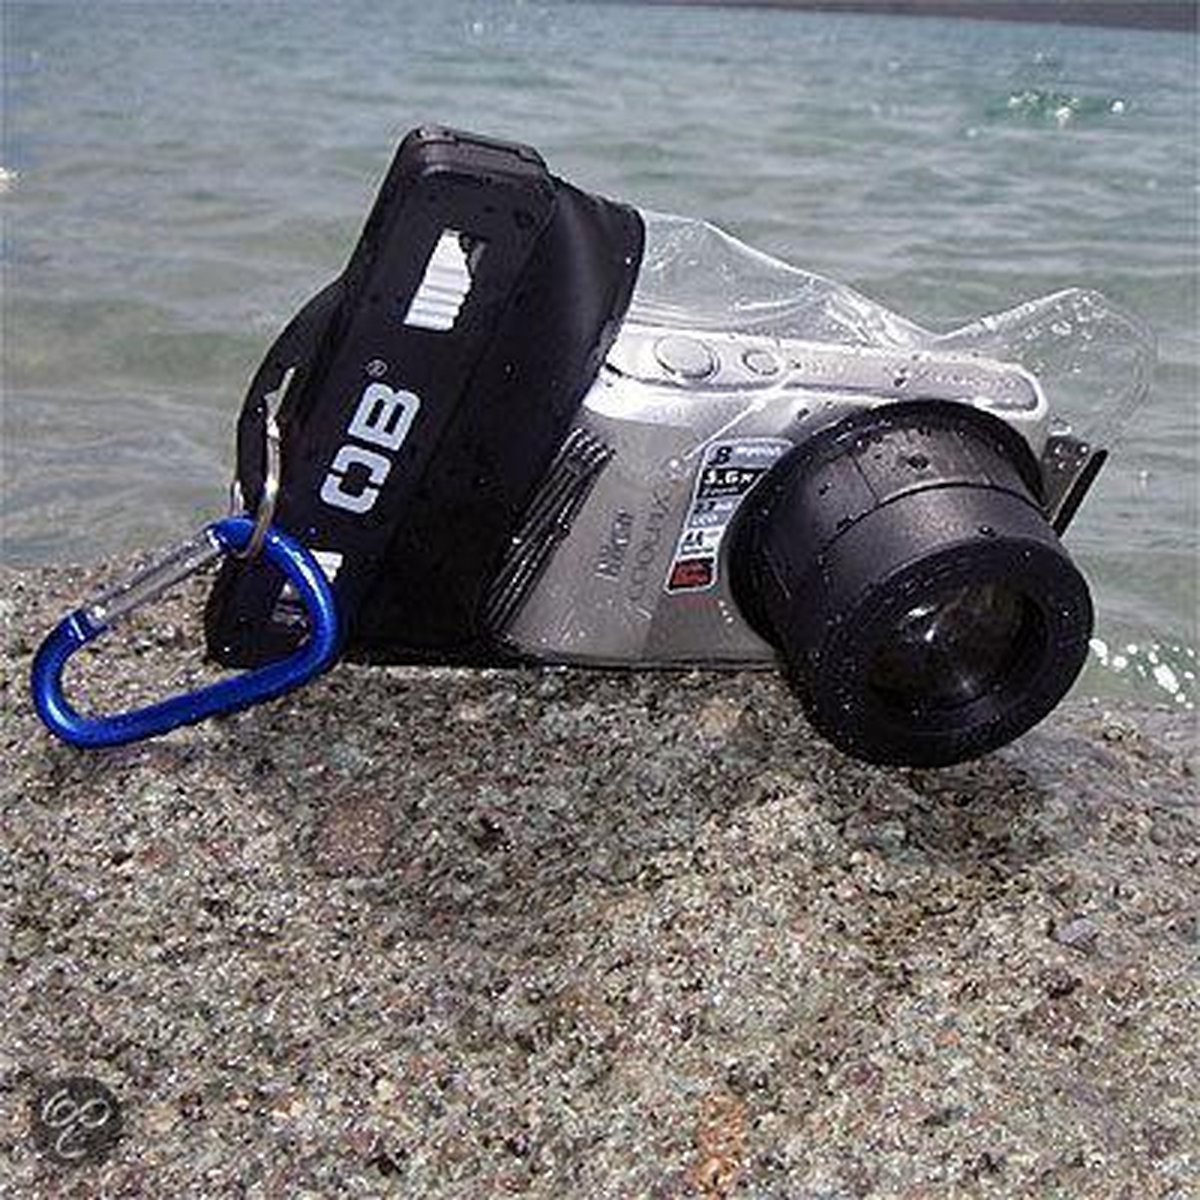 profiel Lounge uitgehongerd Waterdichte hoes voor compact-camera met zoomlens Over-Board | bol.com